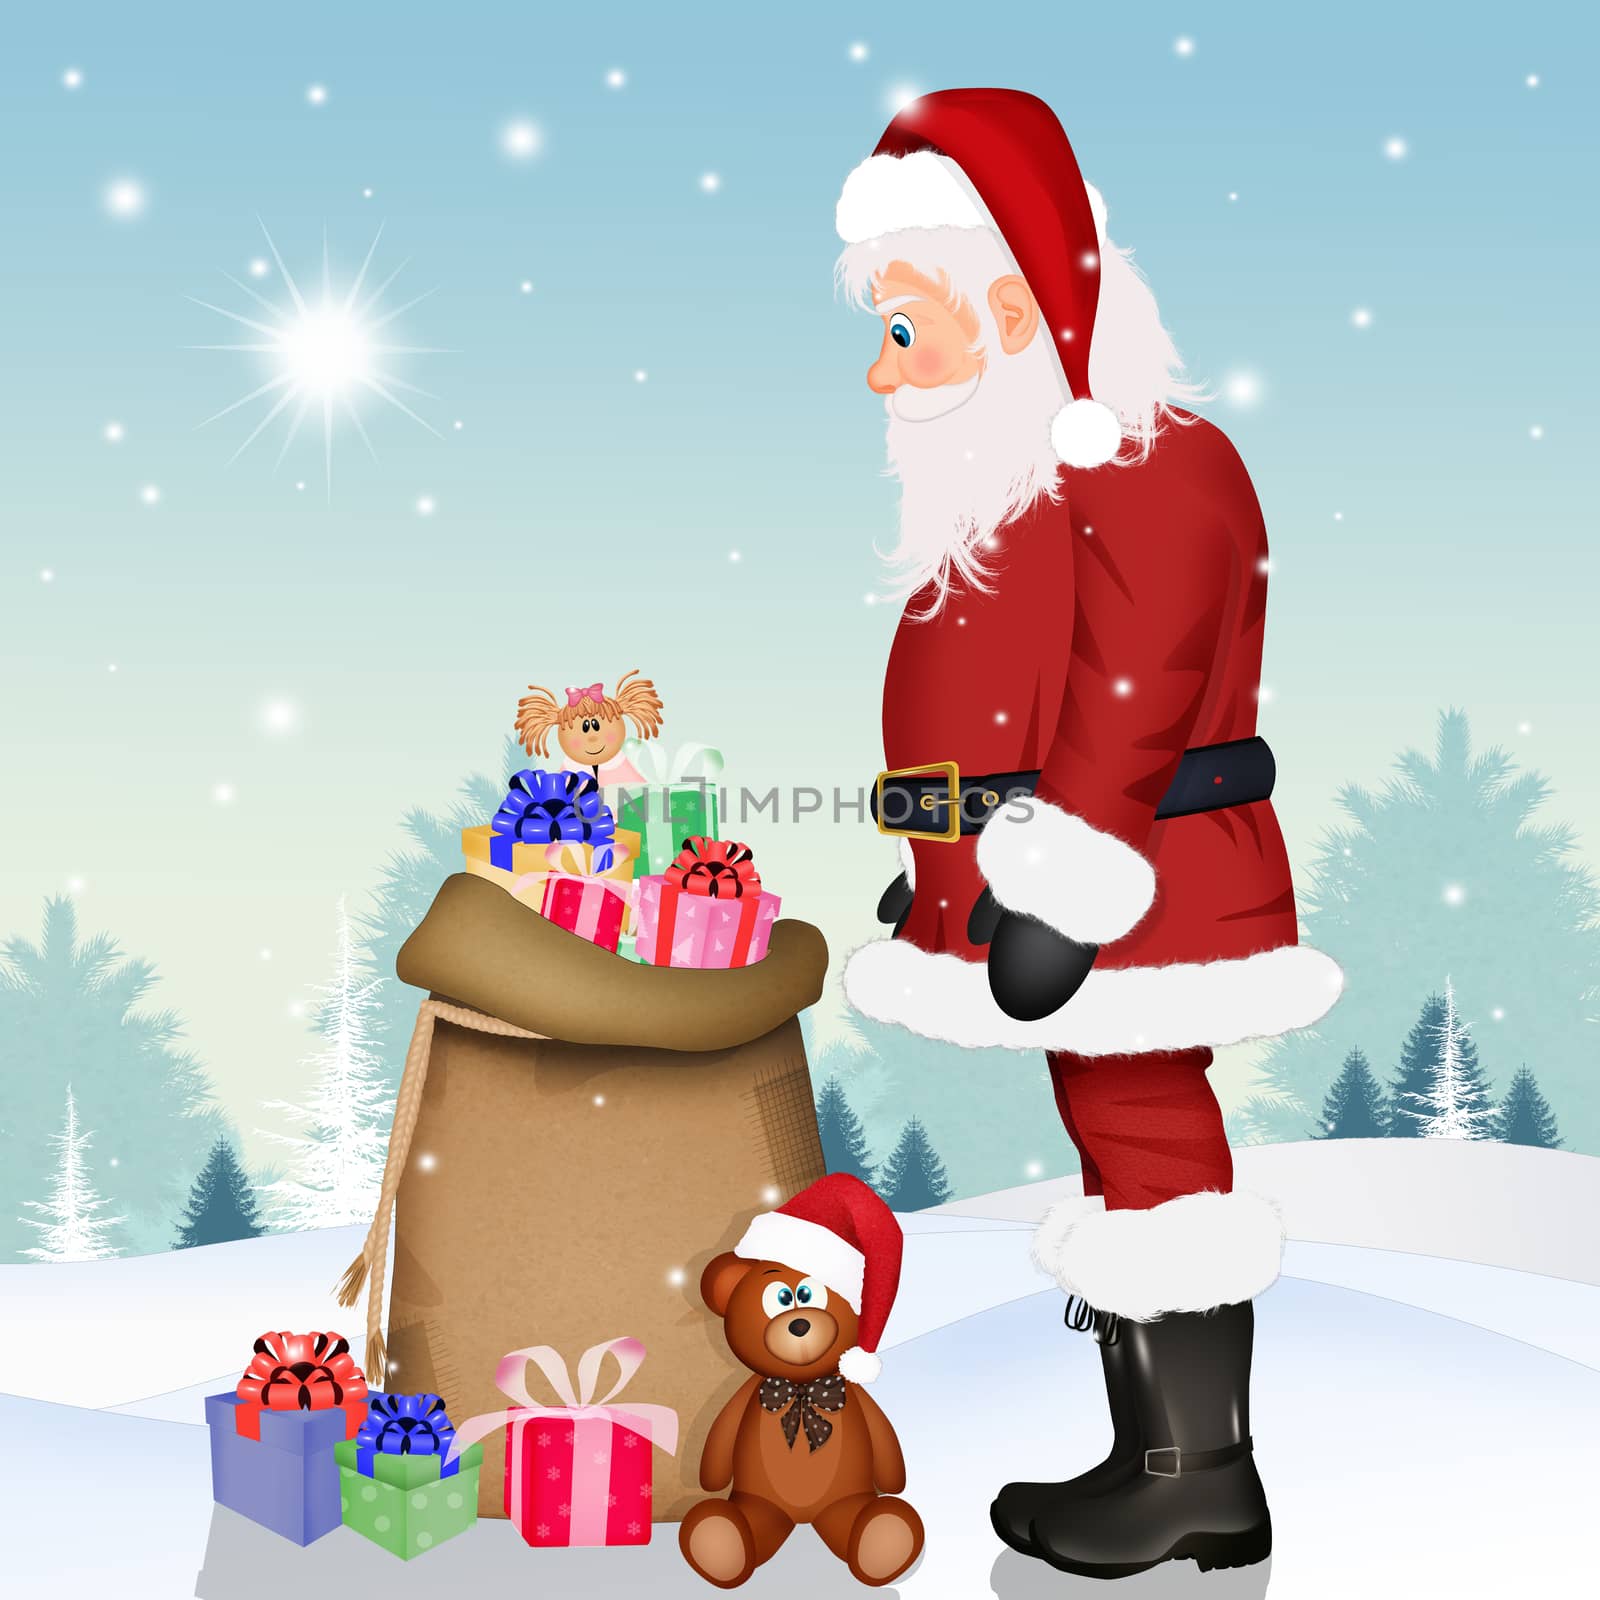 Santa Claus and Christmas gifts by adrenalina